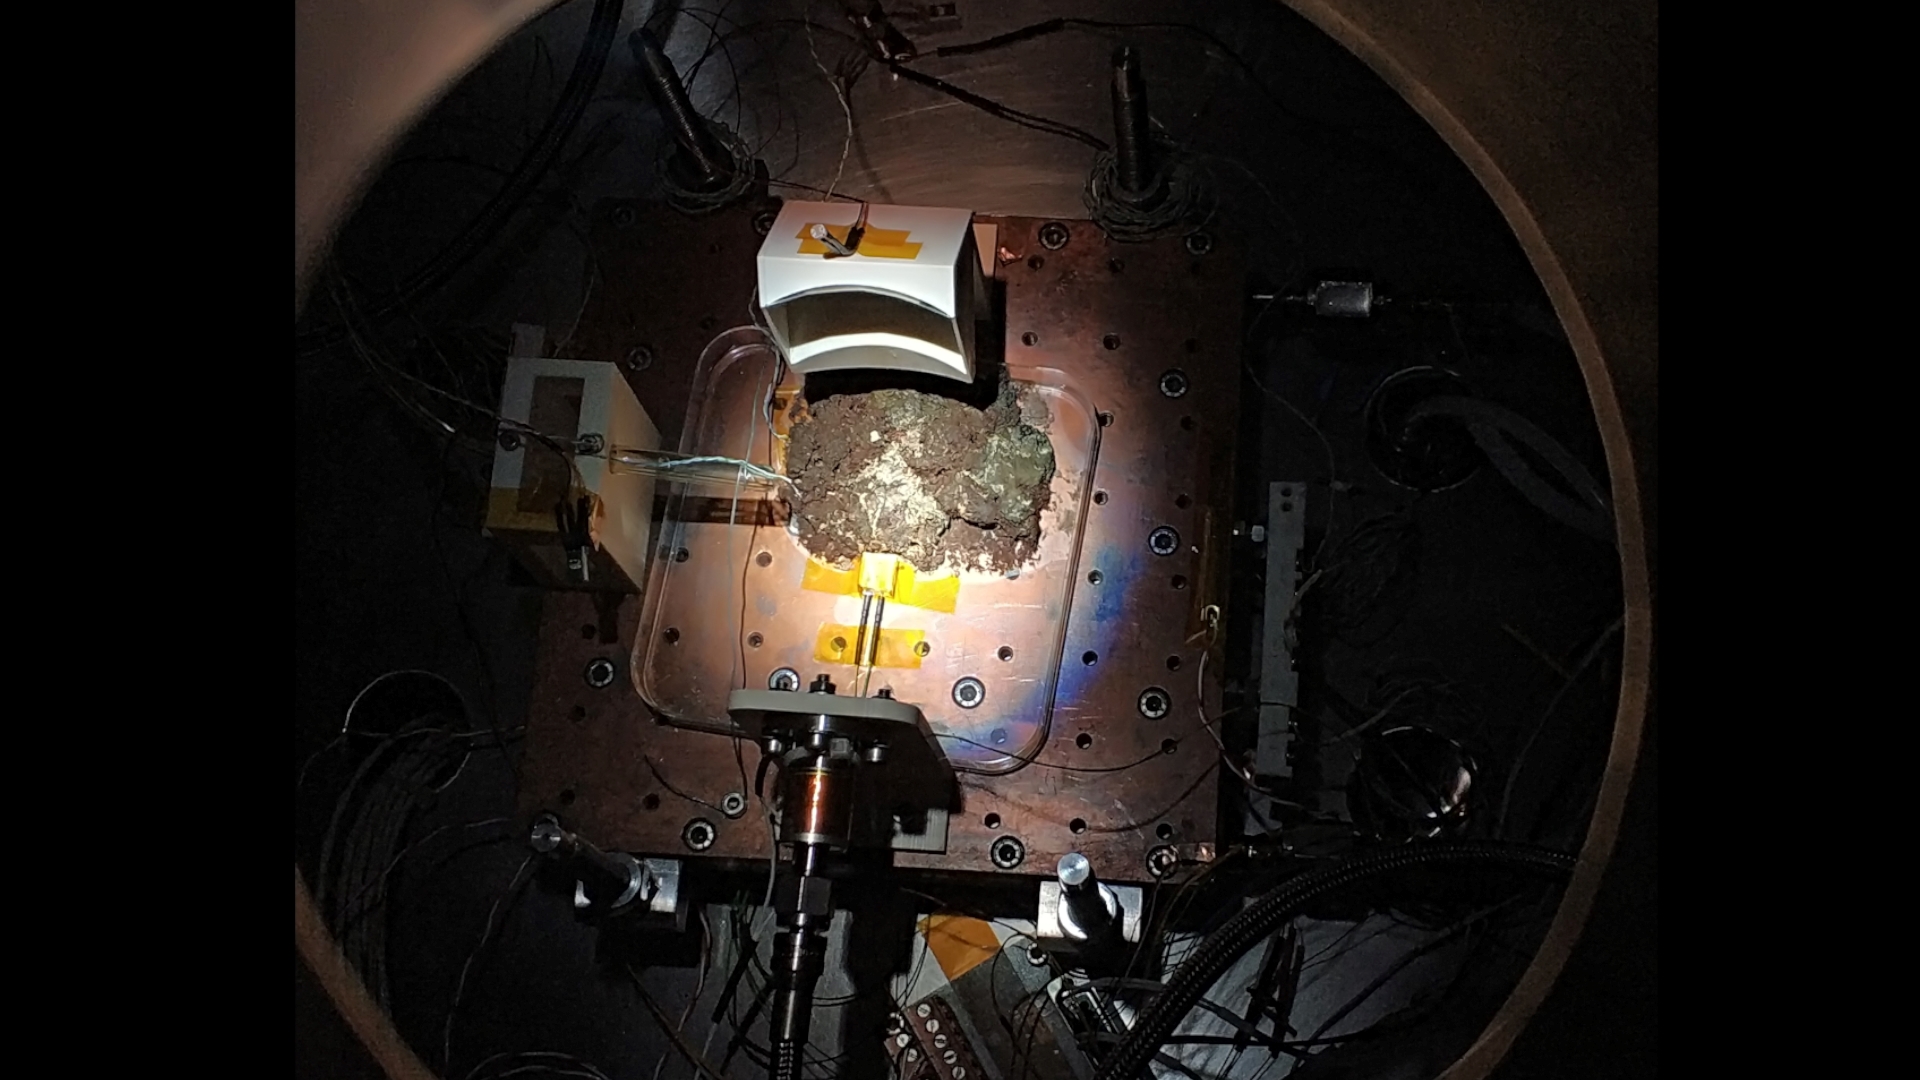 Fotografía de la máquina sobre fondo negro con el foco dirigido a la muestra de microorganismos vivos.